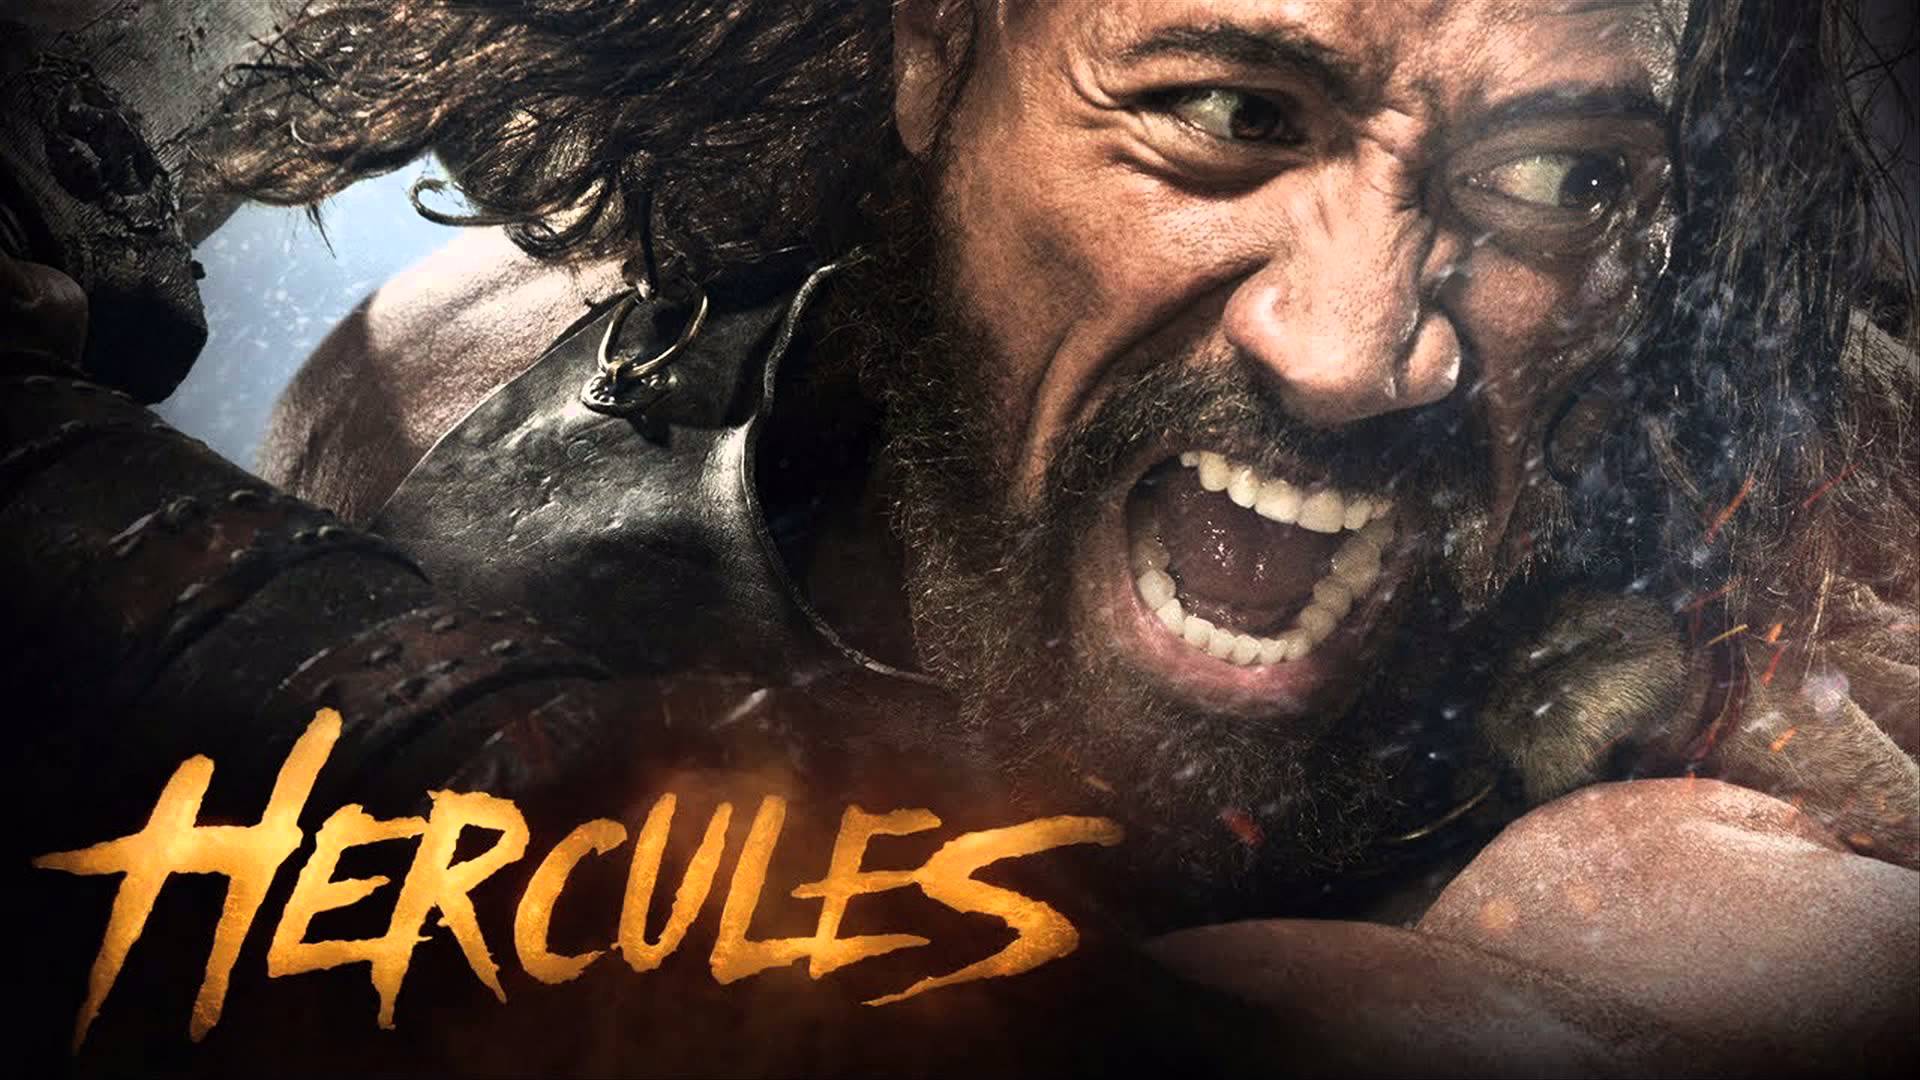 Hercules (2014) #2